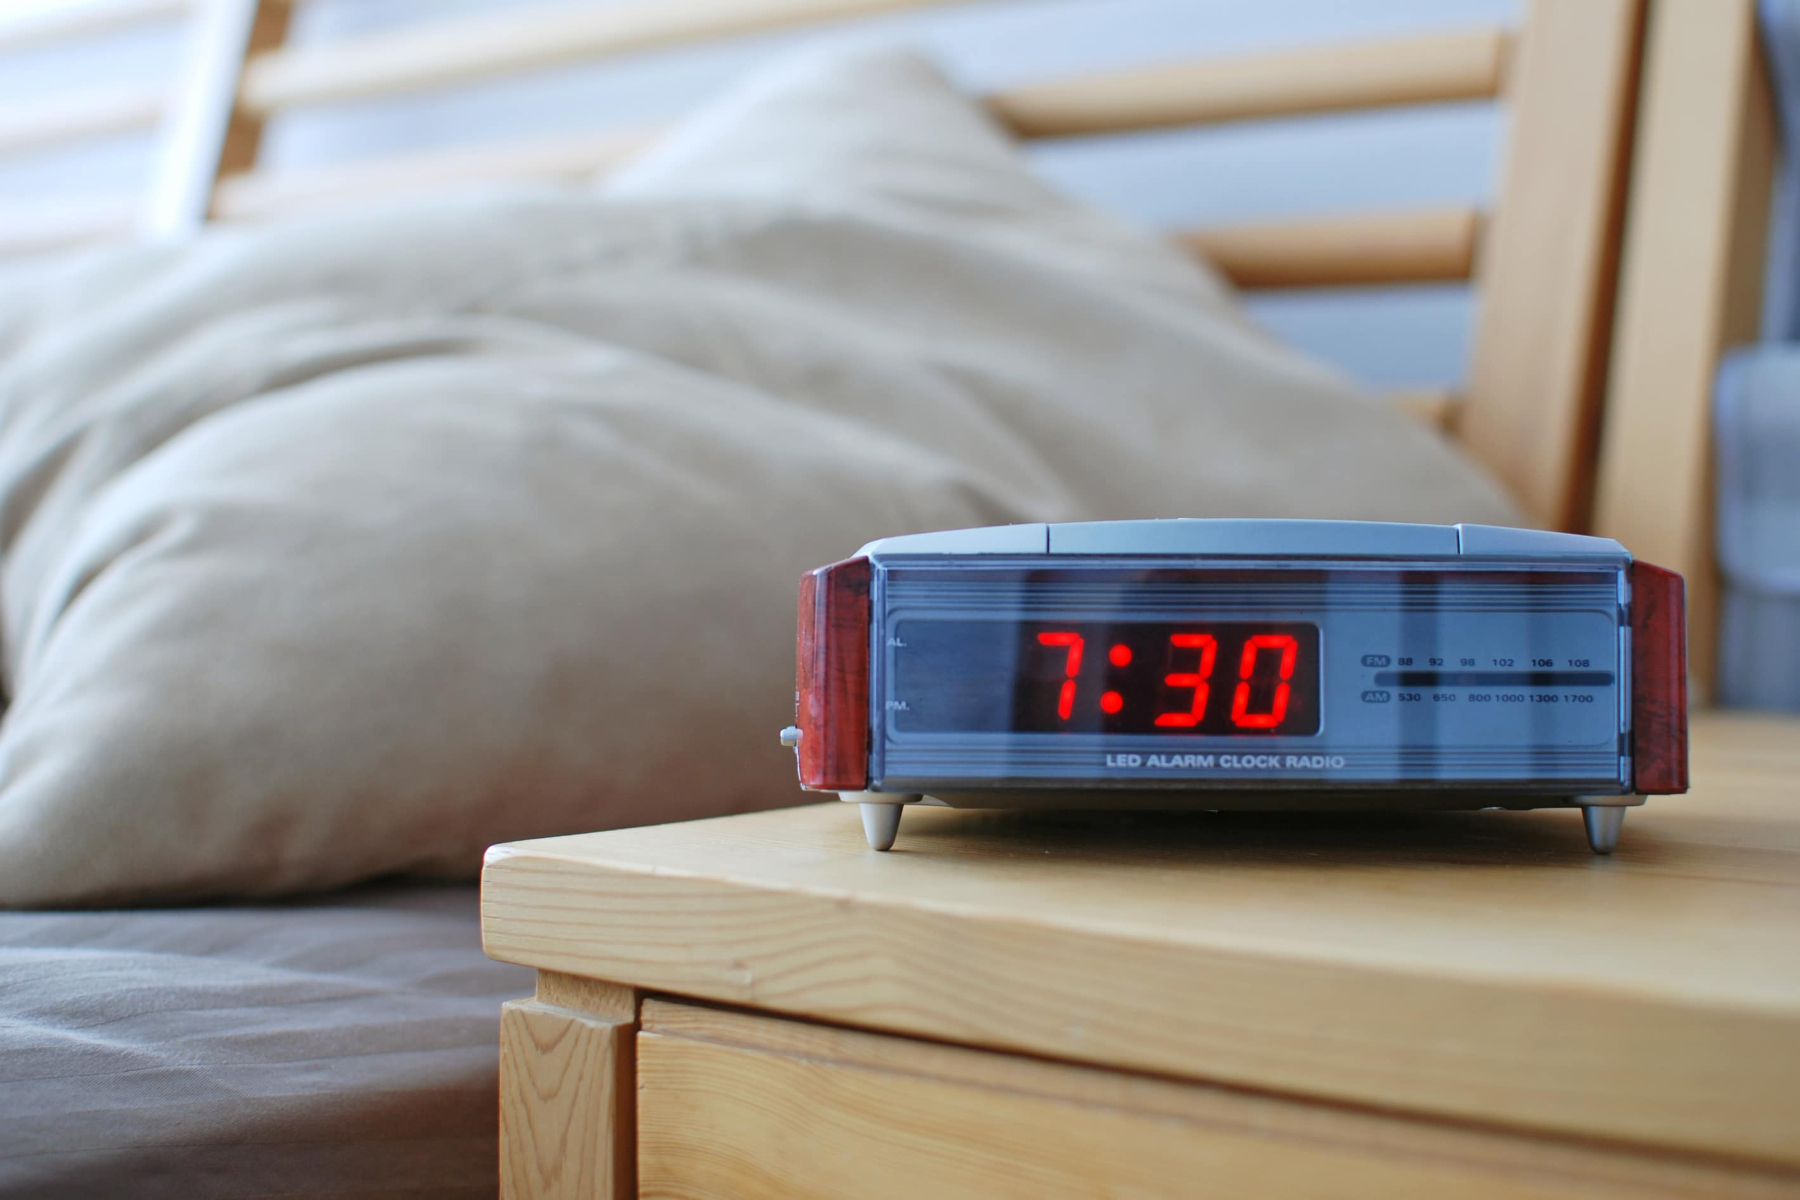 Ύπνος θερινή ώρα: Πώς η αλλαγή των ρολογιών επηρεάζει τον ύπνο μας;